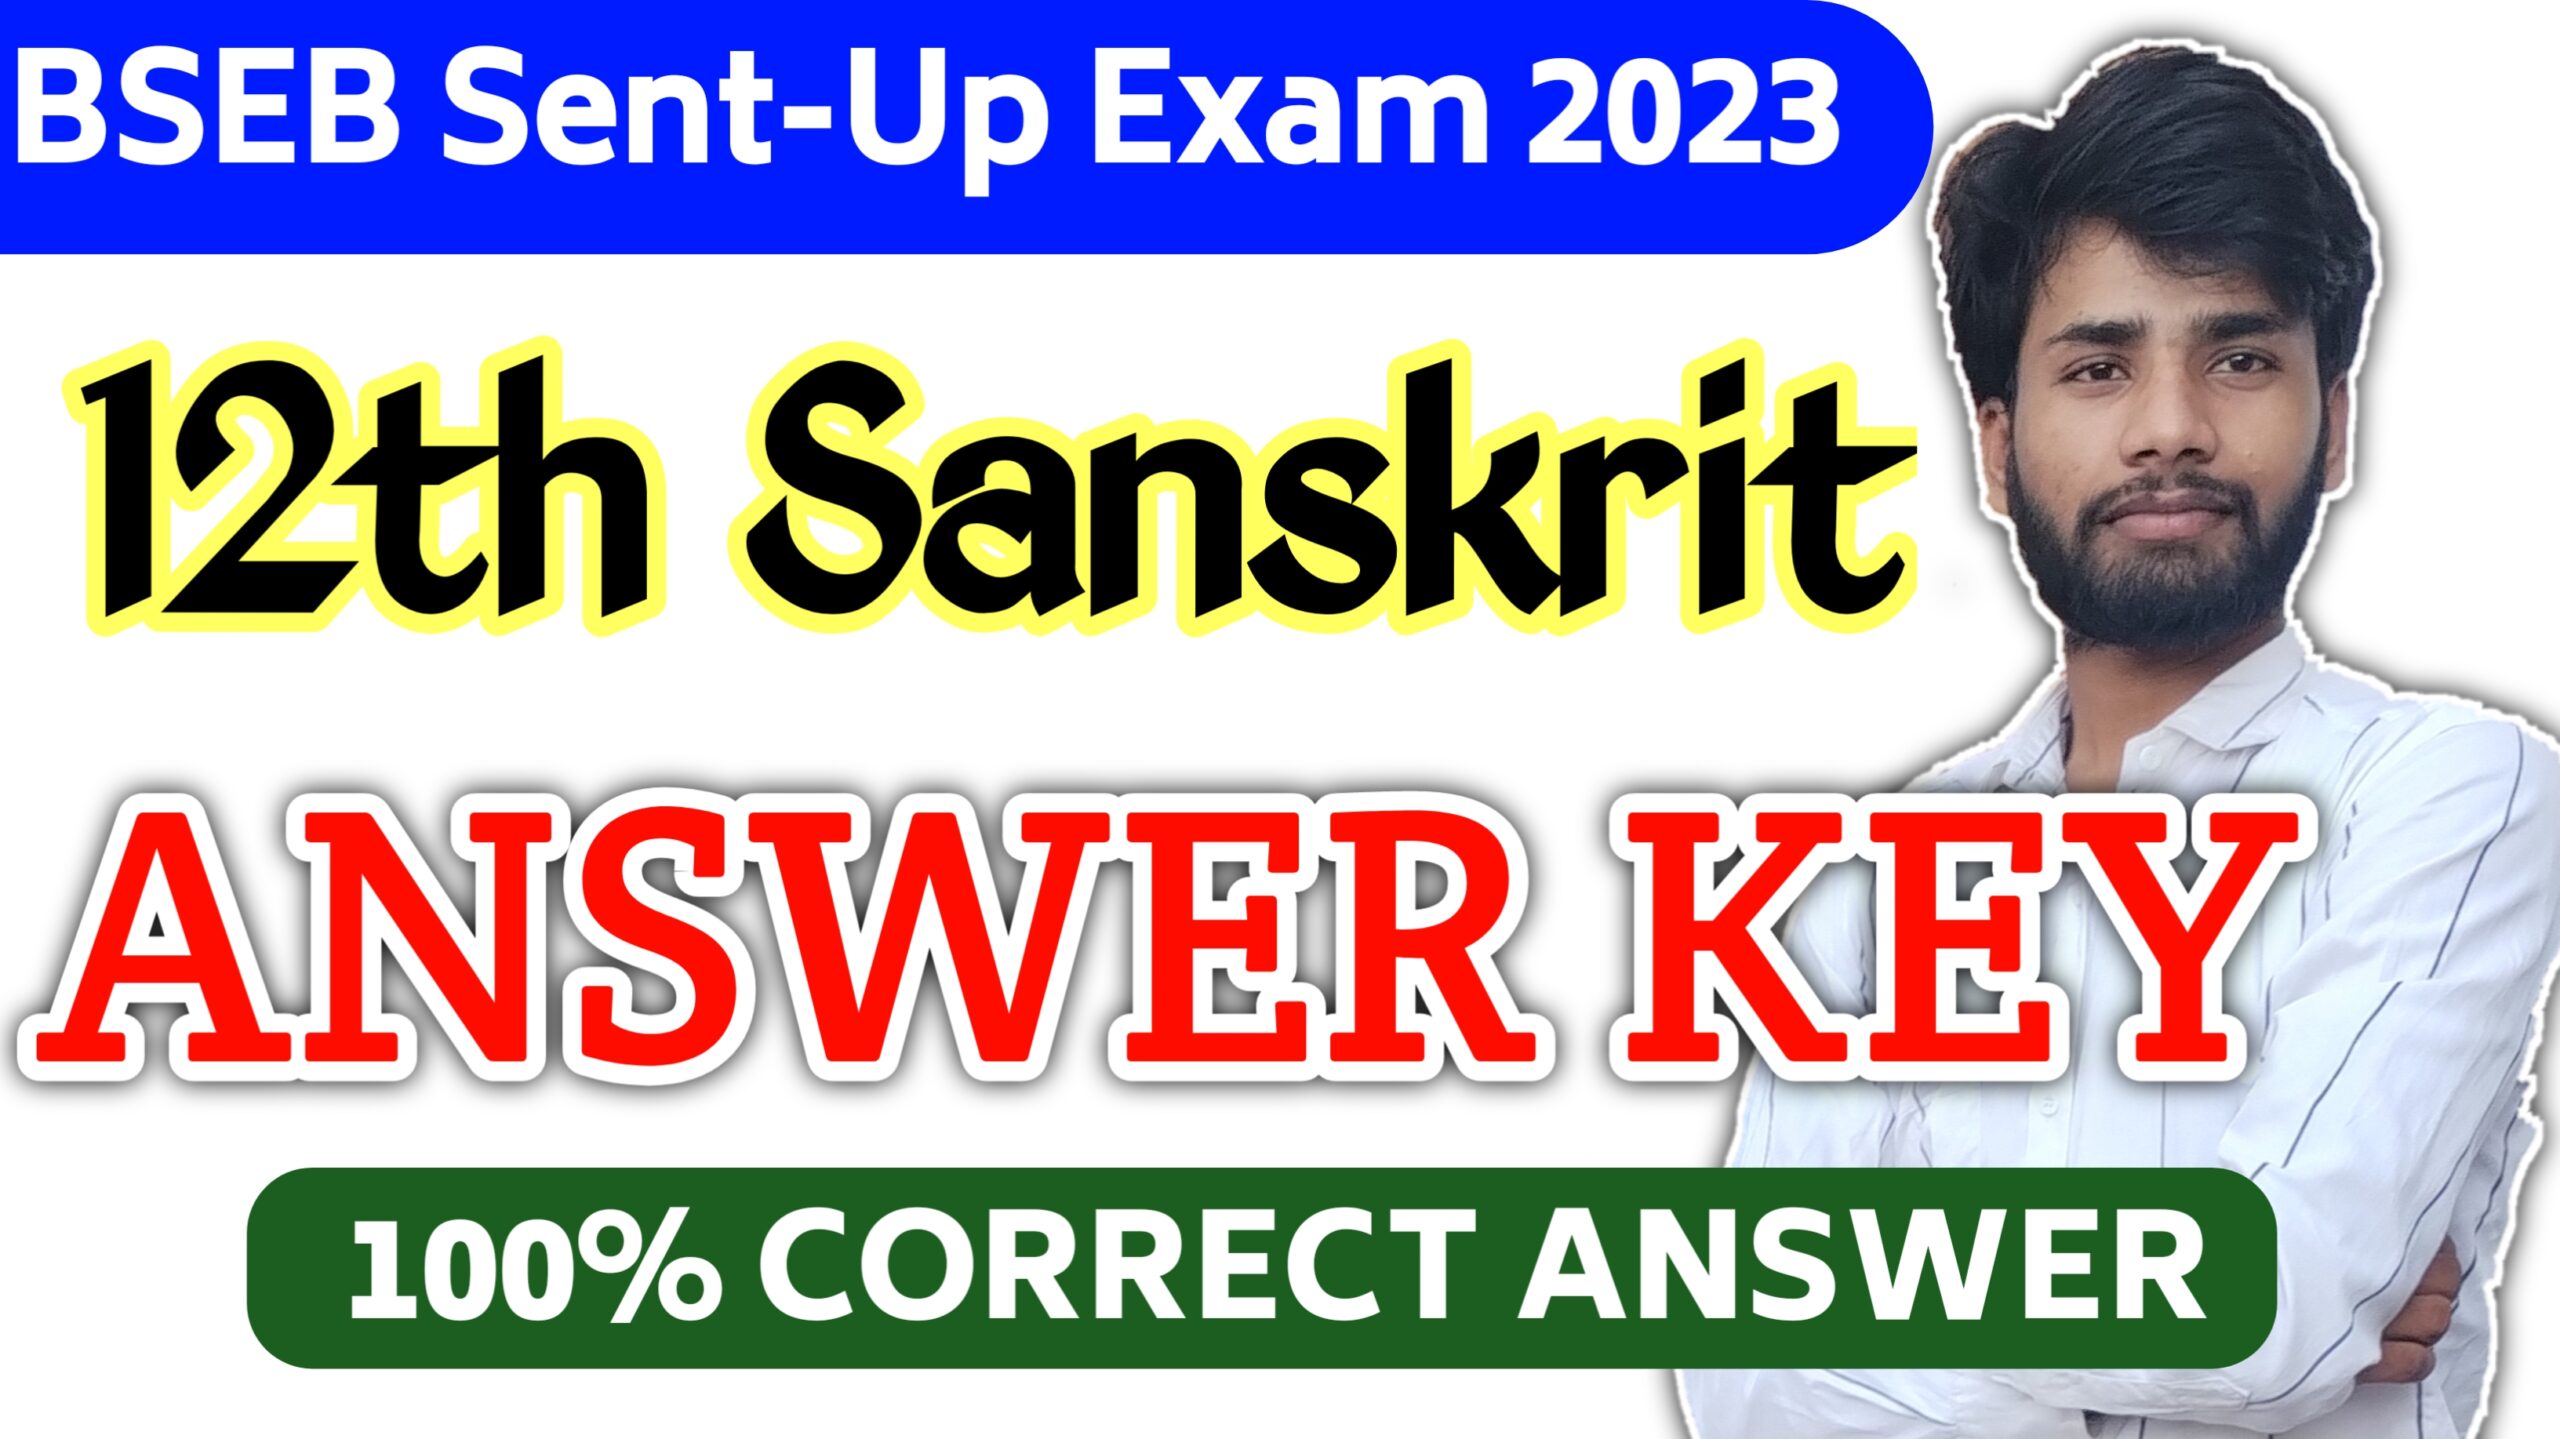 Bihar Board 12th Sanskrit Sent-Up Exam 2023